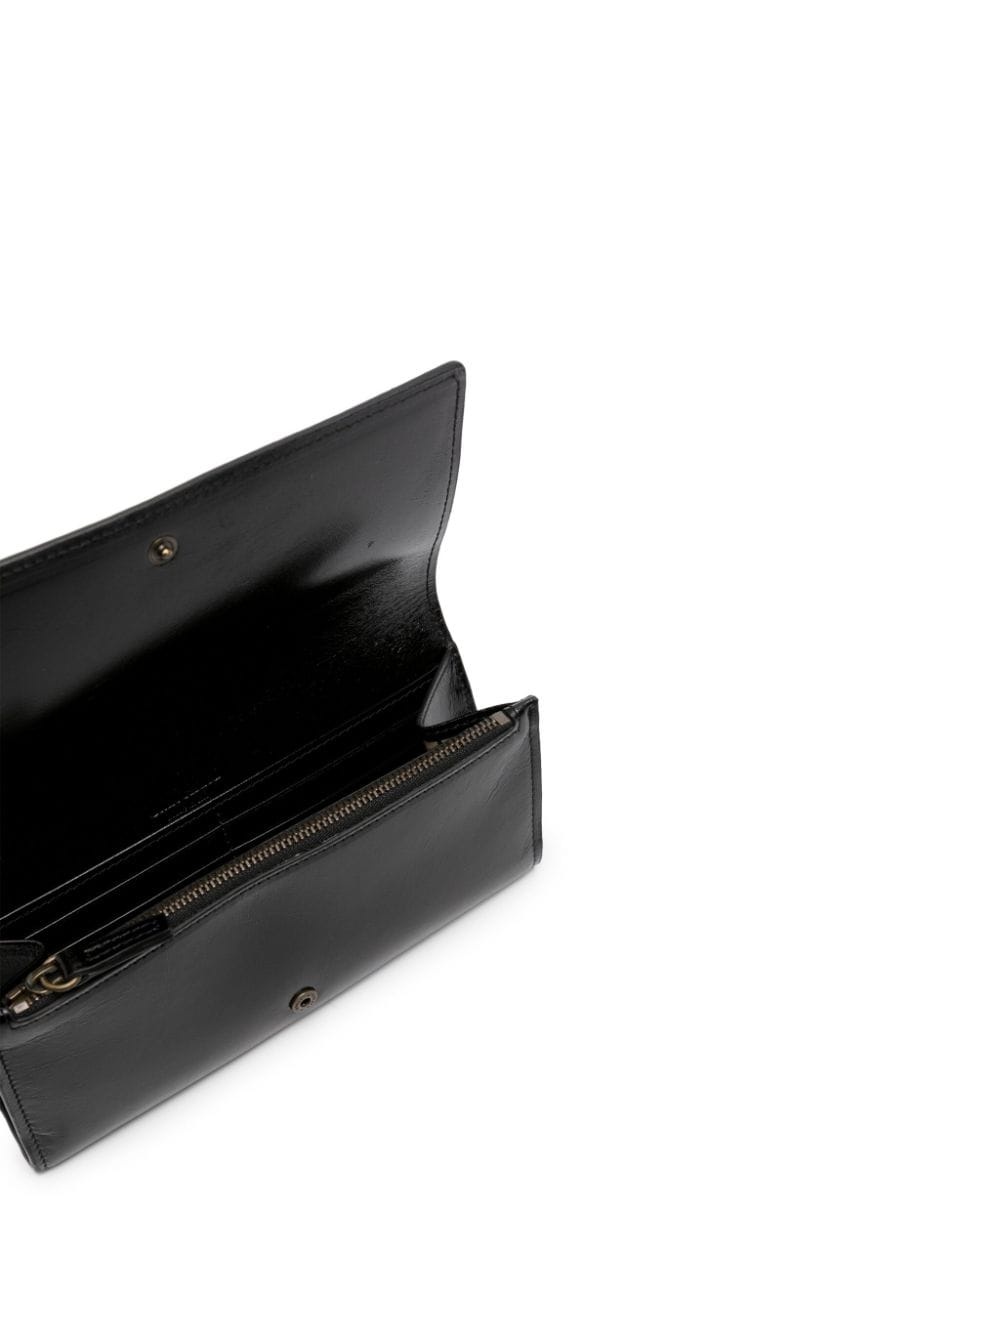 logo-debossed leather wallet - 3